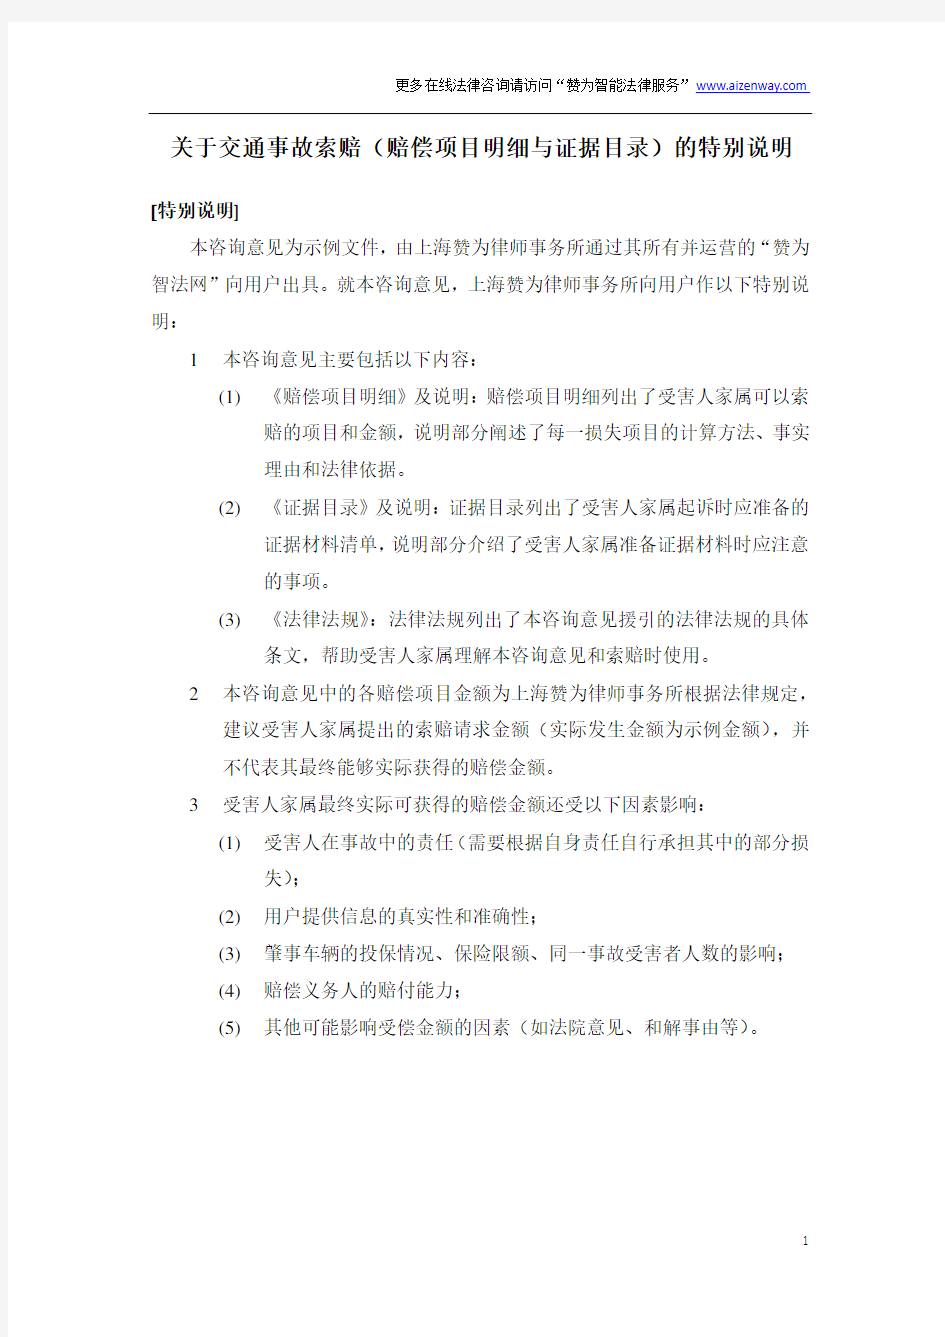 2015年北京市交通事故赔偿项目明细(城镇居民死亡示例)+证据目录+法律分析